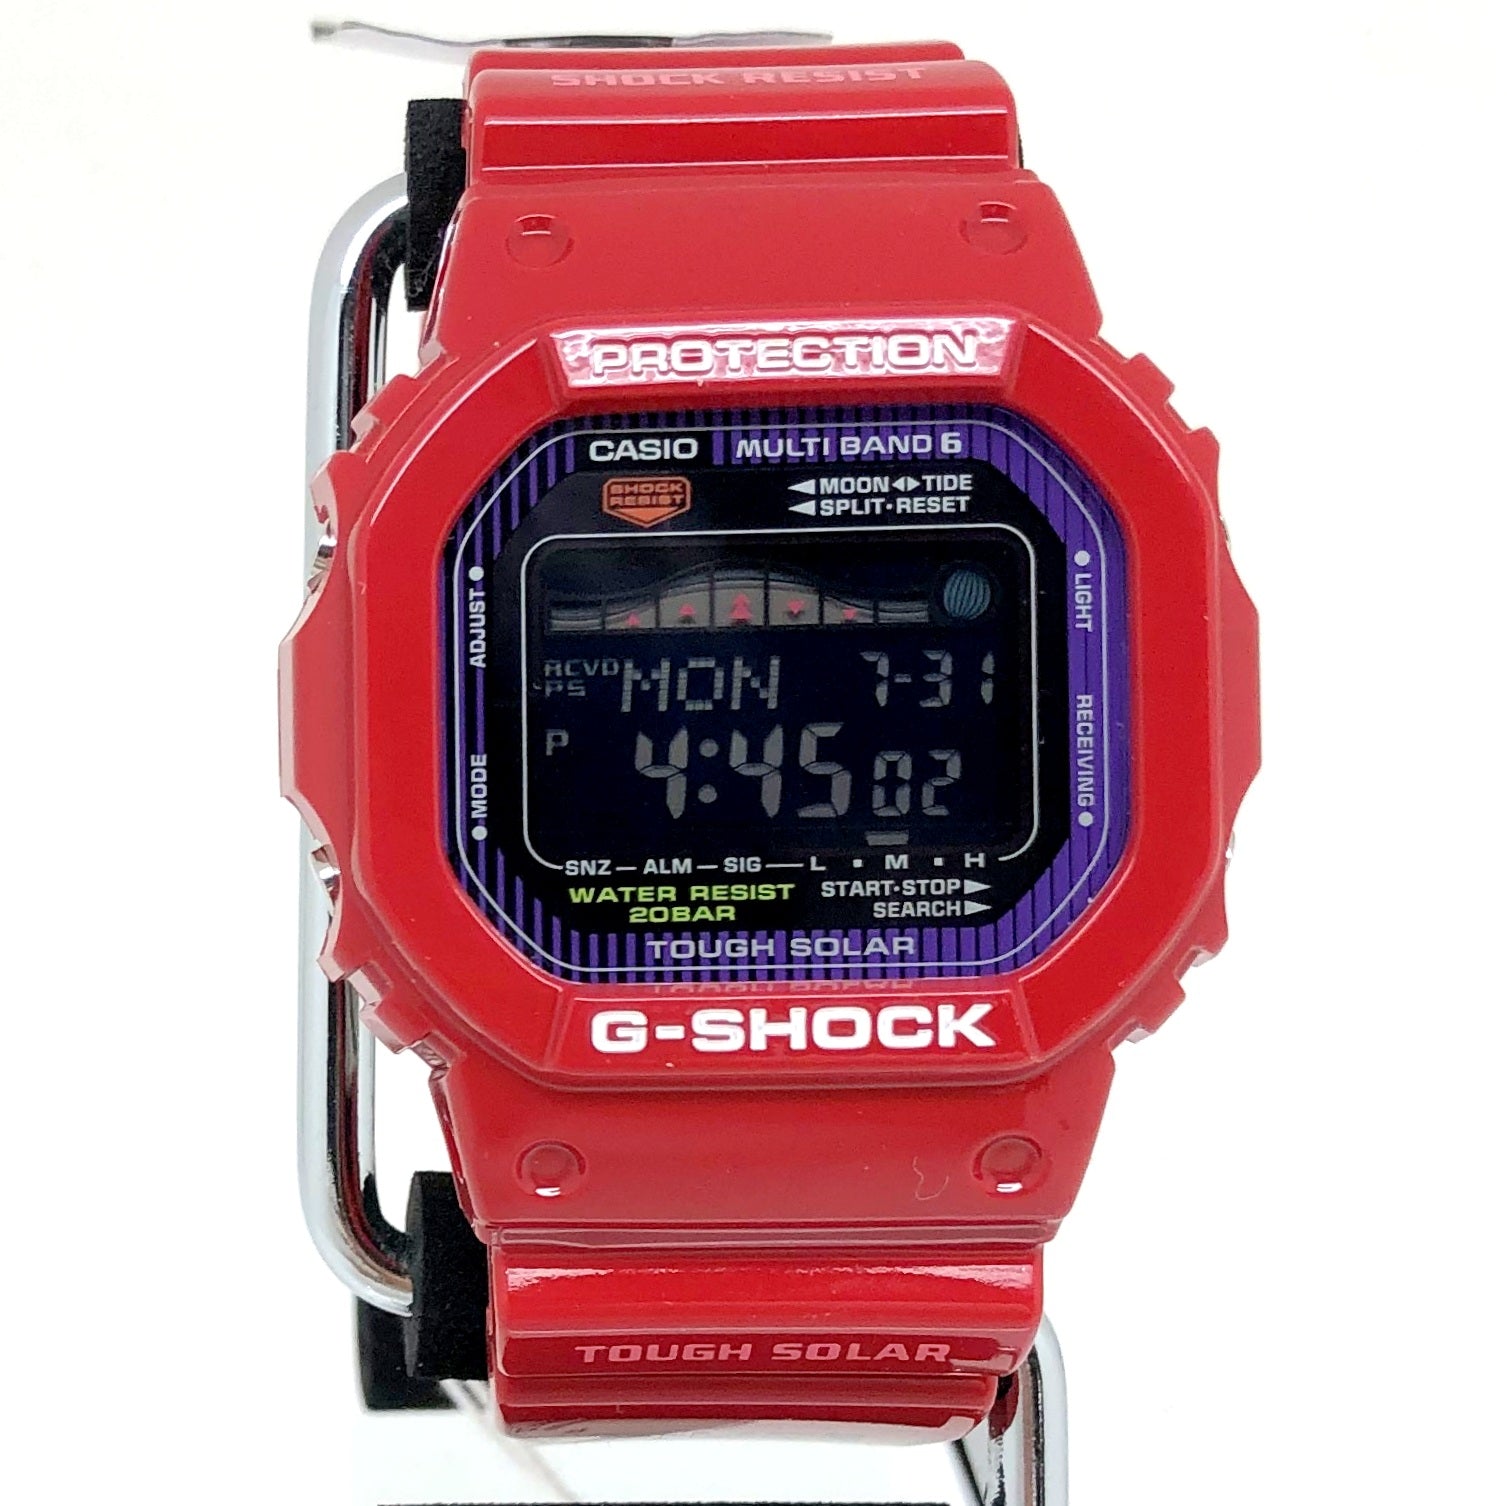 腕時計(デジタル)新品・未使用★国内正規品★G-SHOCK★GWX-5600C-4JF